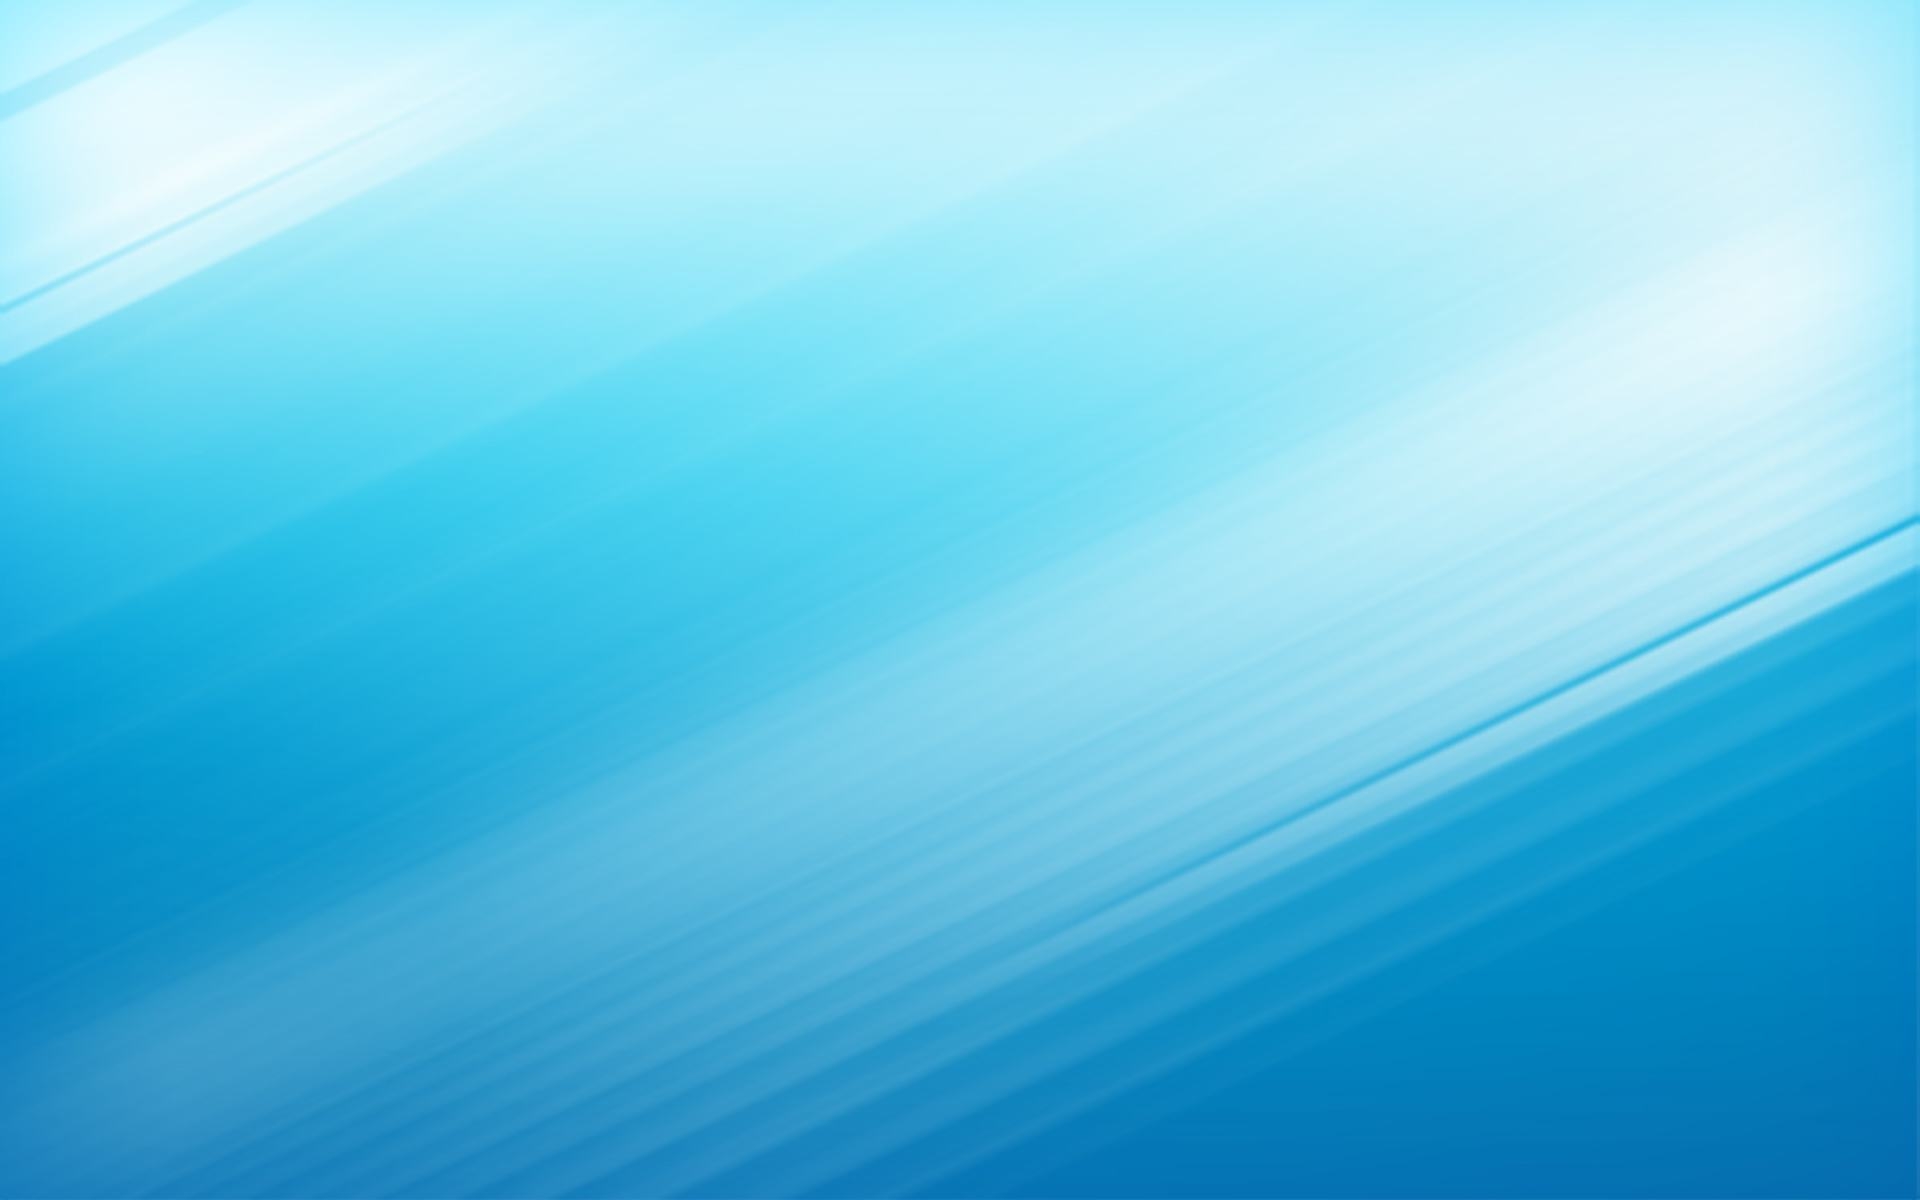 50 Hình nền powerpoint màu xanh dương cực đẹp  Blue and white wallpaper  Waves wallpaper Vector free